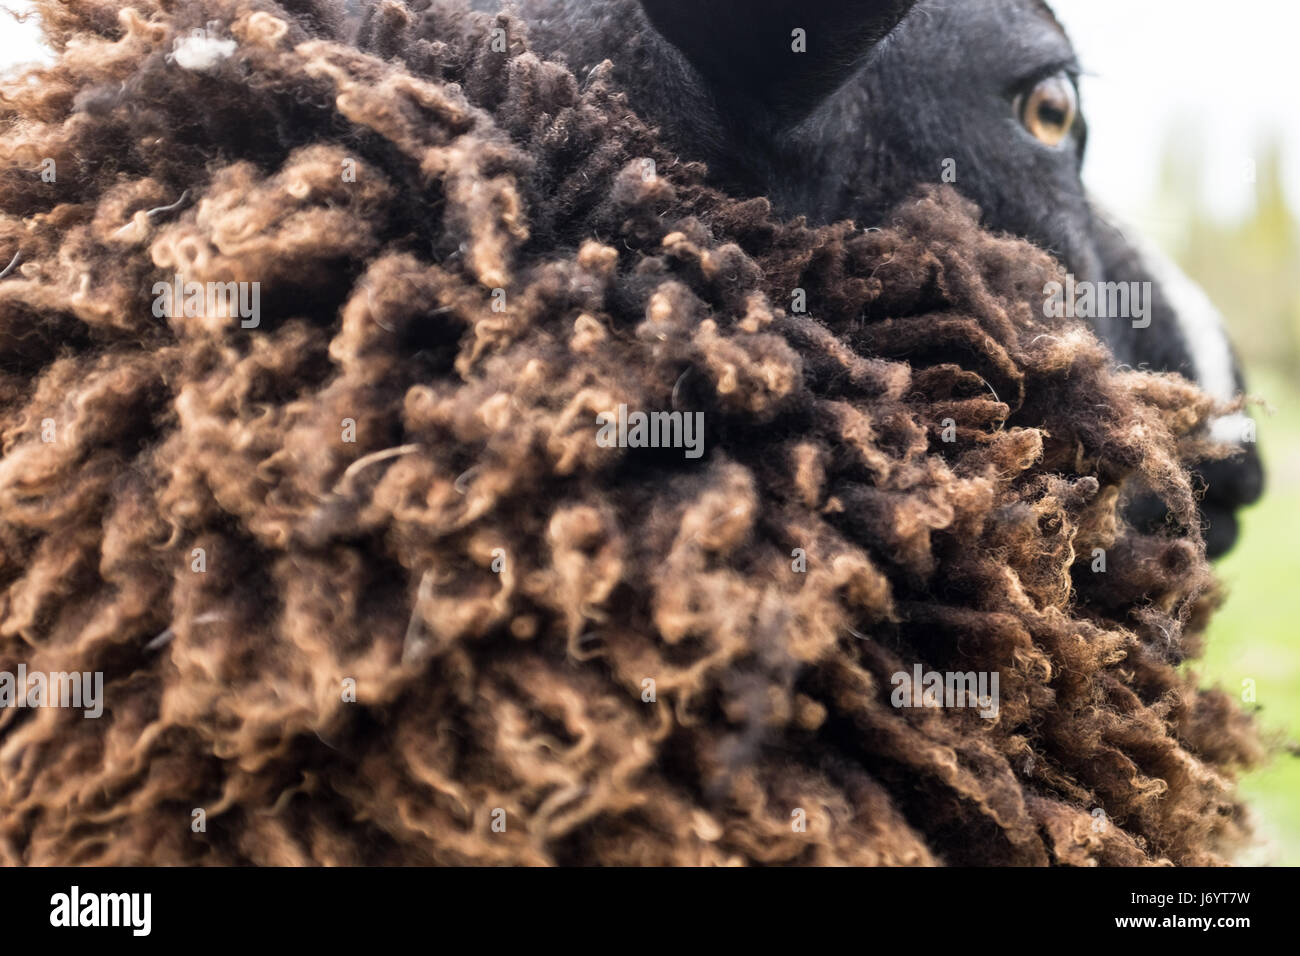 Close-up de una oveja con una gruesa capa de lana, Holanda Foto de stock